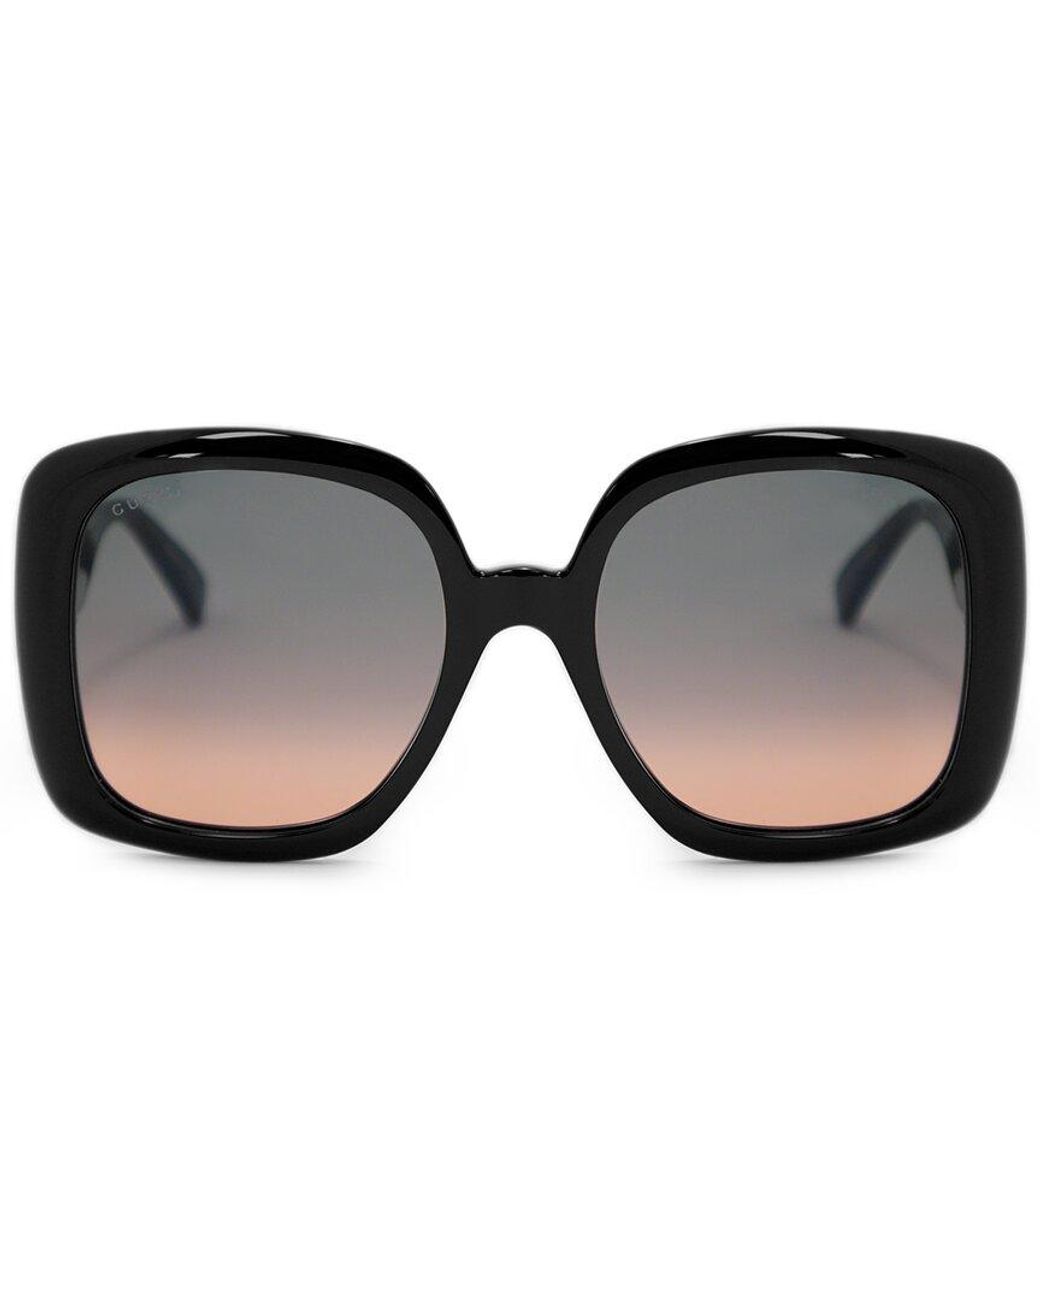 Gucci GG0713S 55mm Sunglasses in Black | Lyst